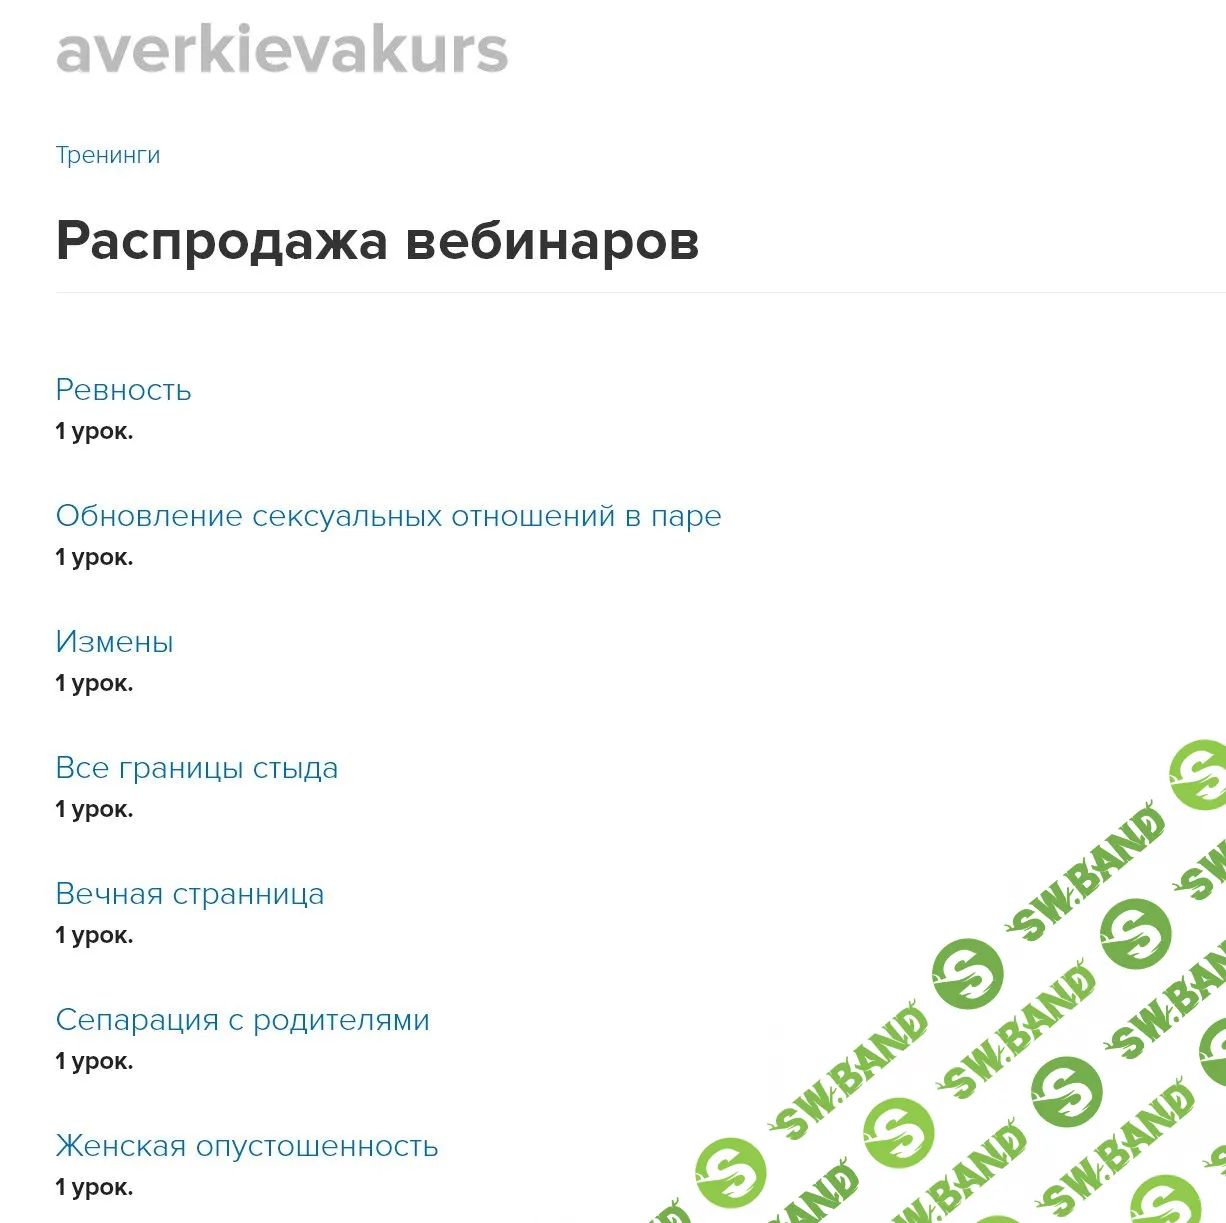 [Виктория Аверкиева] Распродажа вебинаров (материалы до 2021)